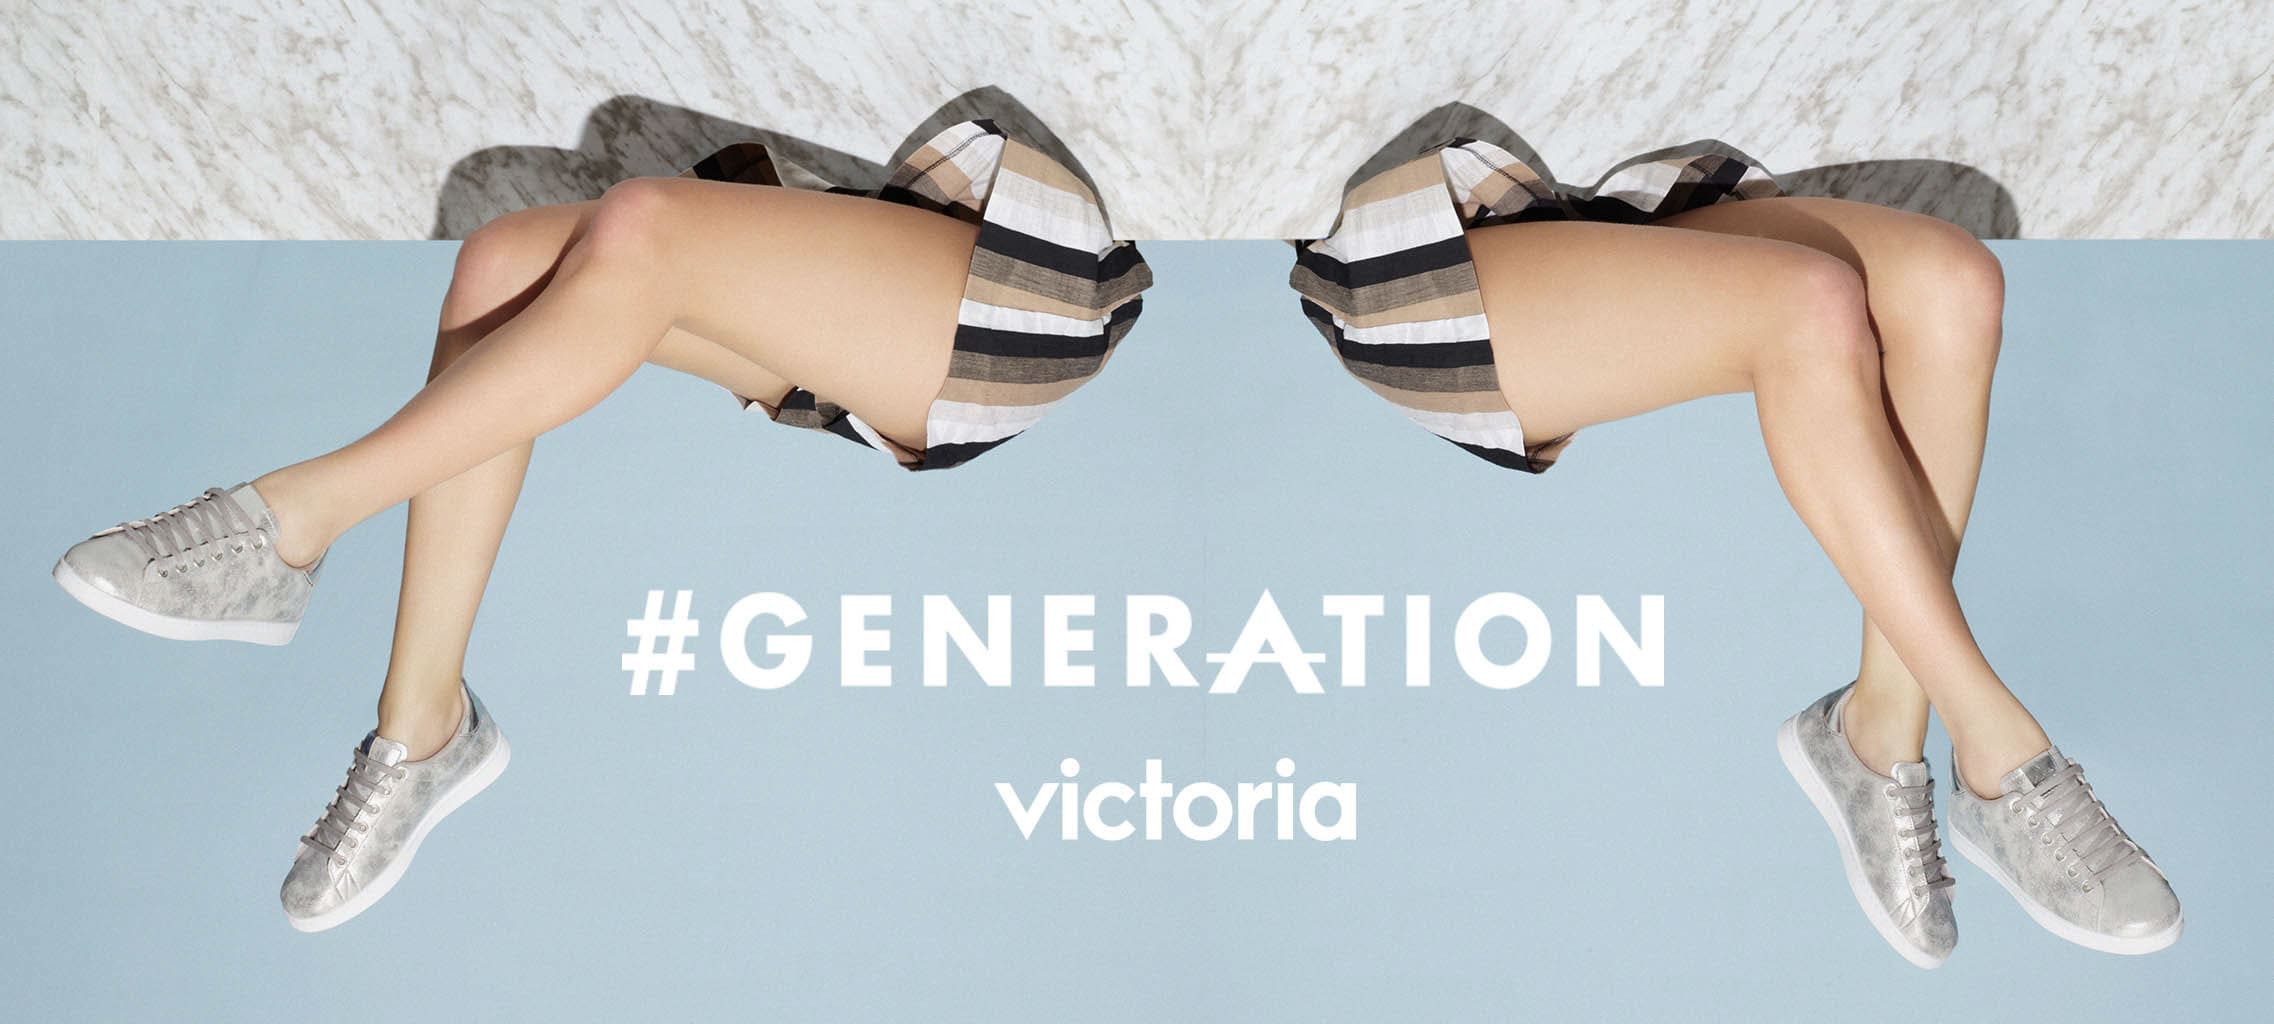 Generation - Campaña publicitaria realizada por la fotógrafa Cristina López junto a Enri Mür Studio para calzados Victoria.